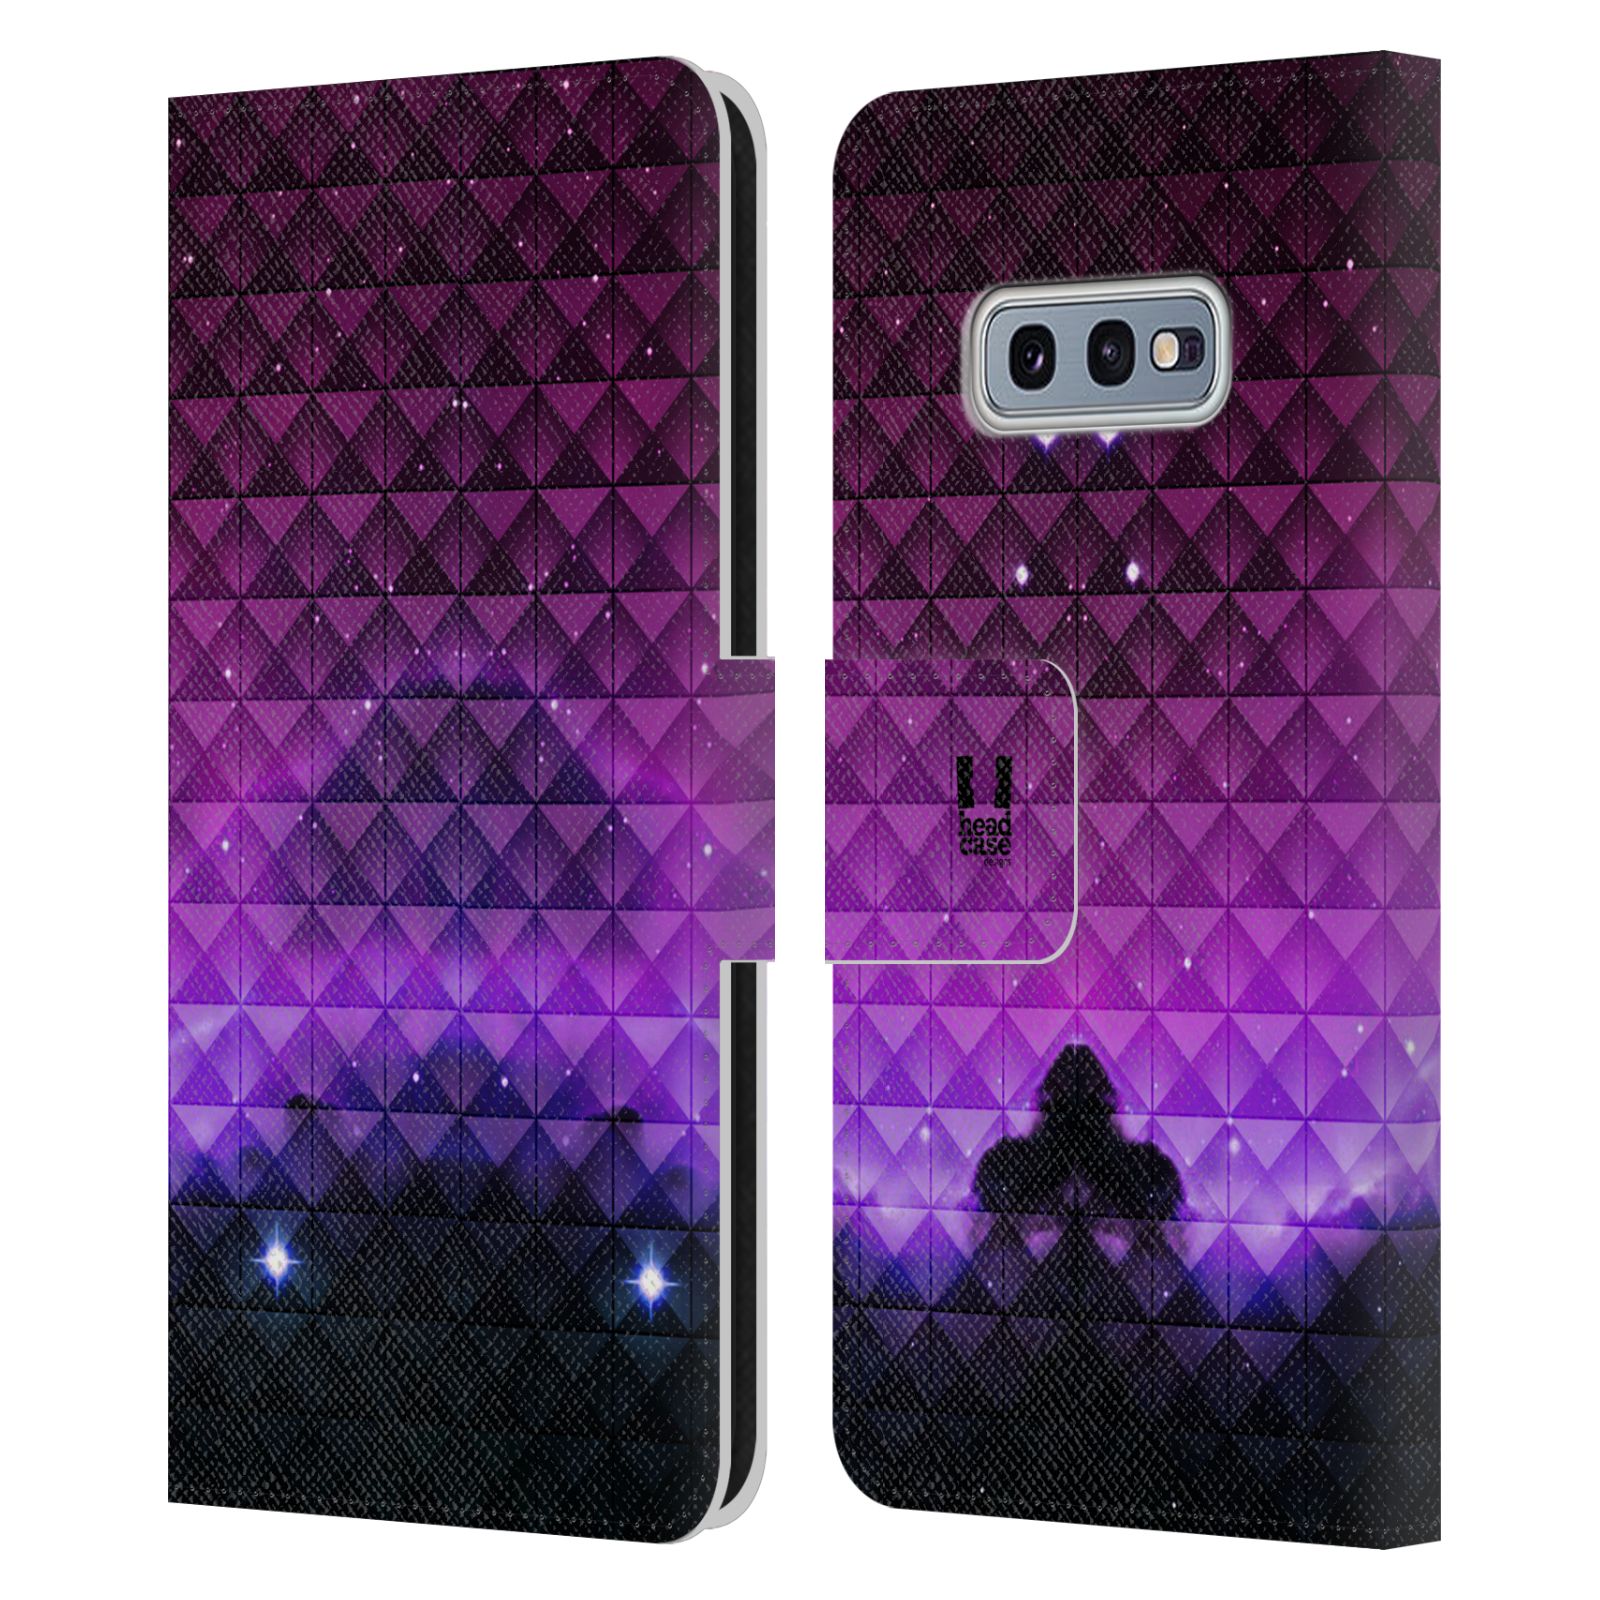 Pouzdro HEAD CASE na mobil Samsung Galaxy S10e barevná vesmírná mlhovina fialová a černá